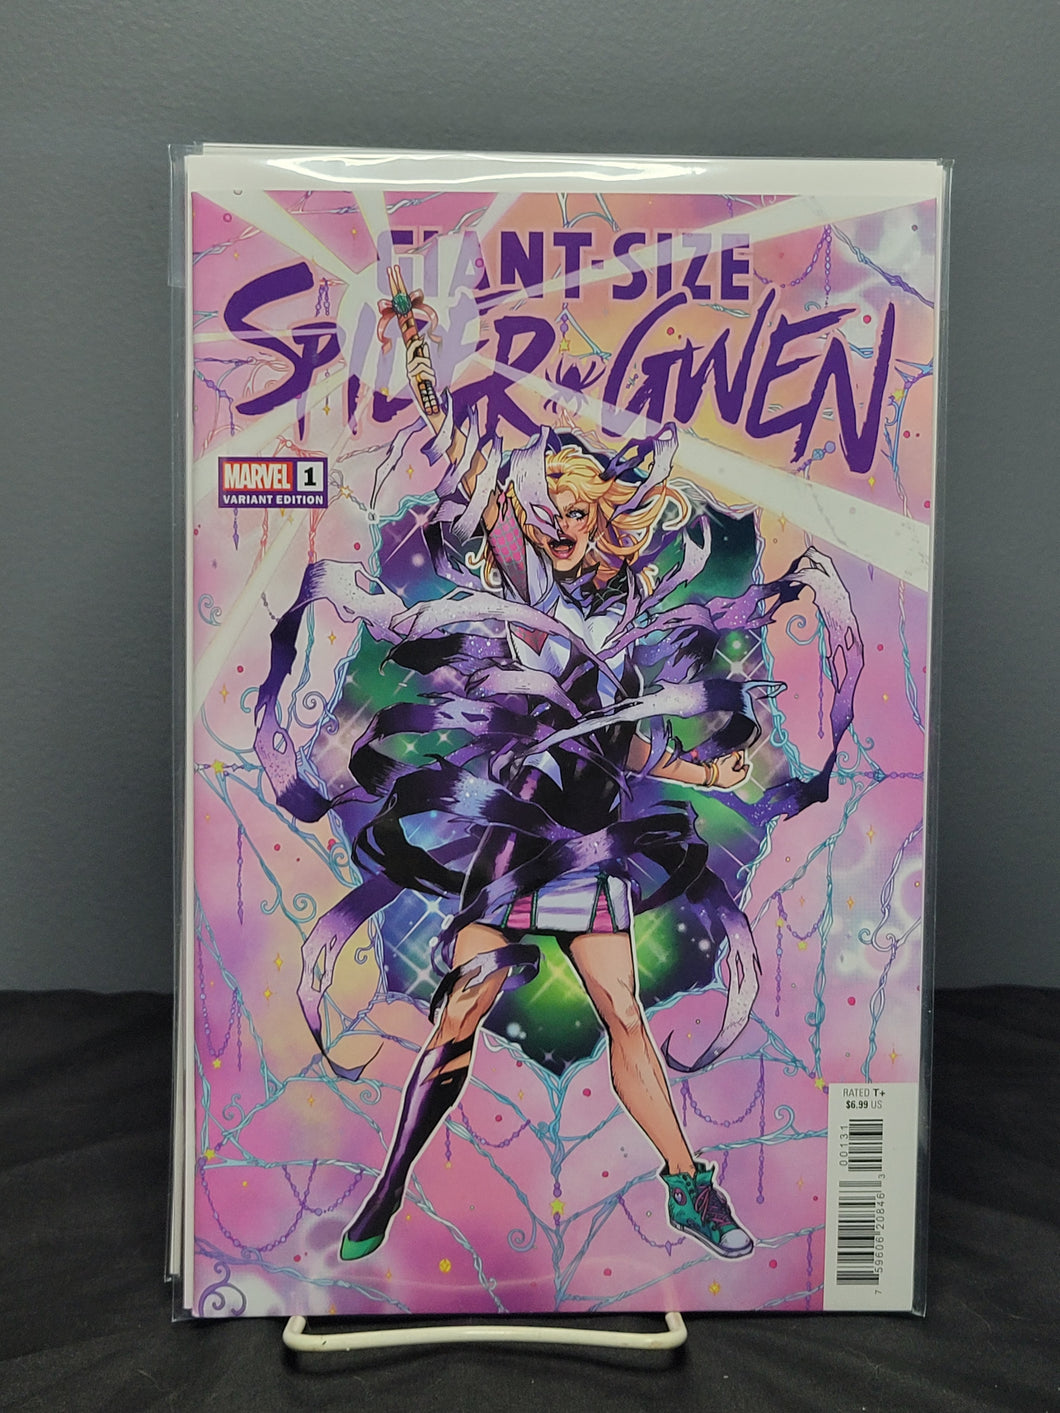 Giant-Size Spider-Gwen #1 Variant